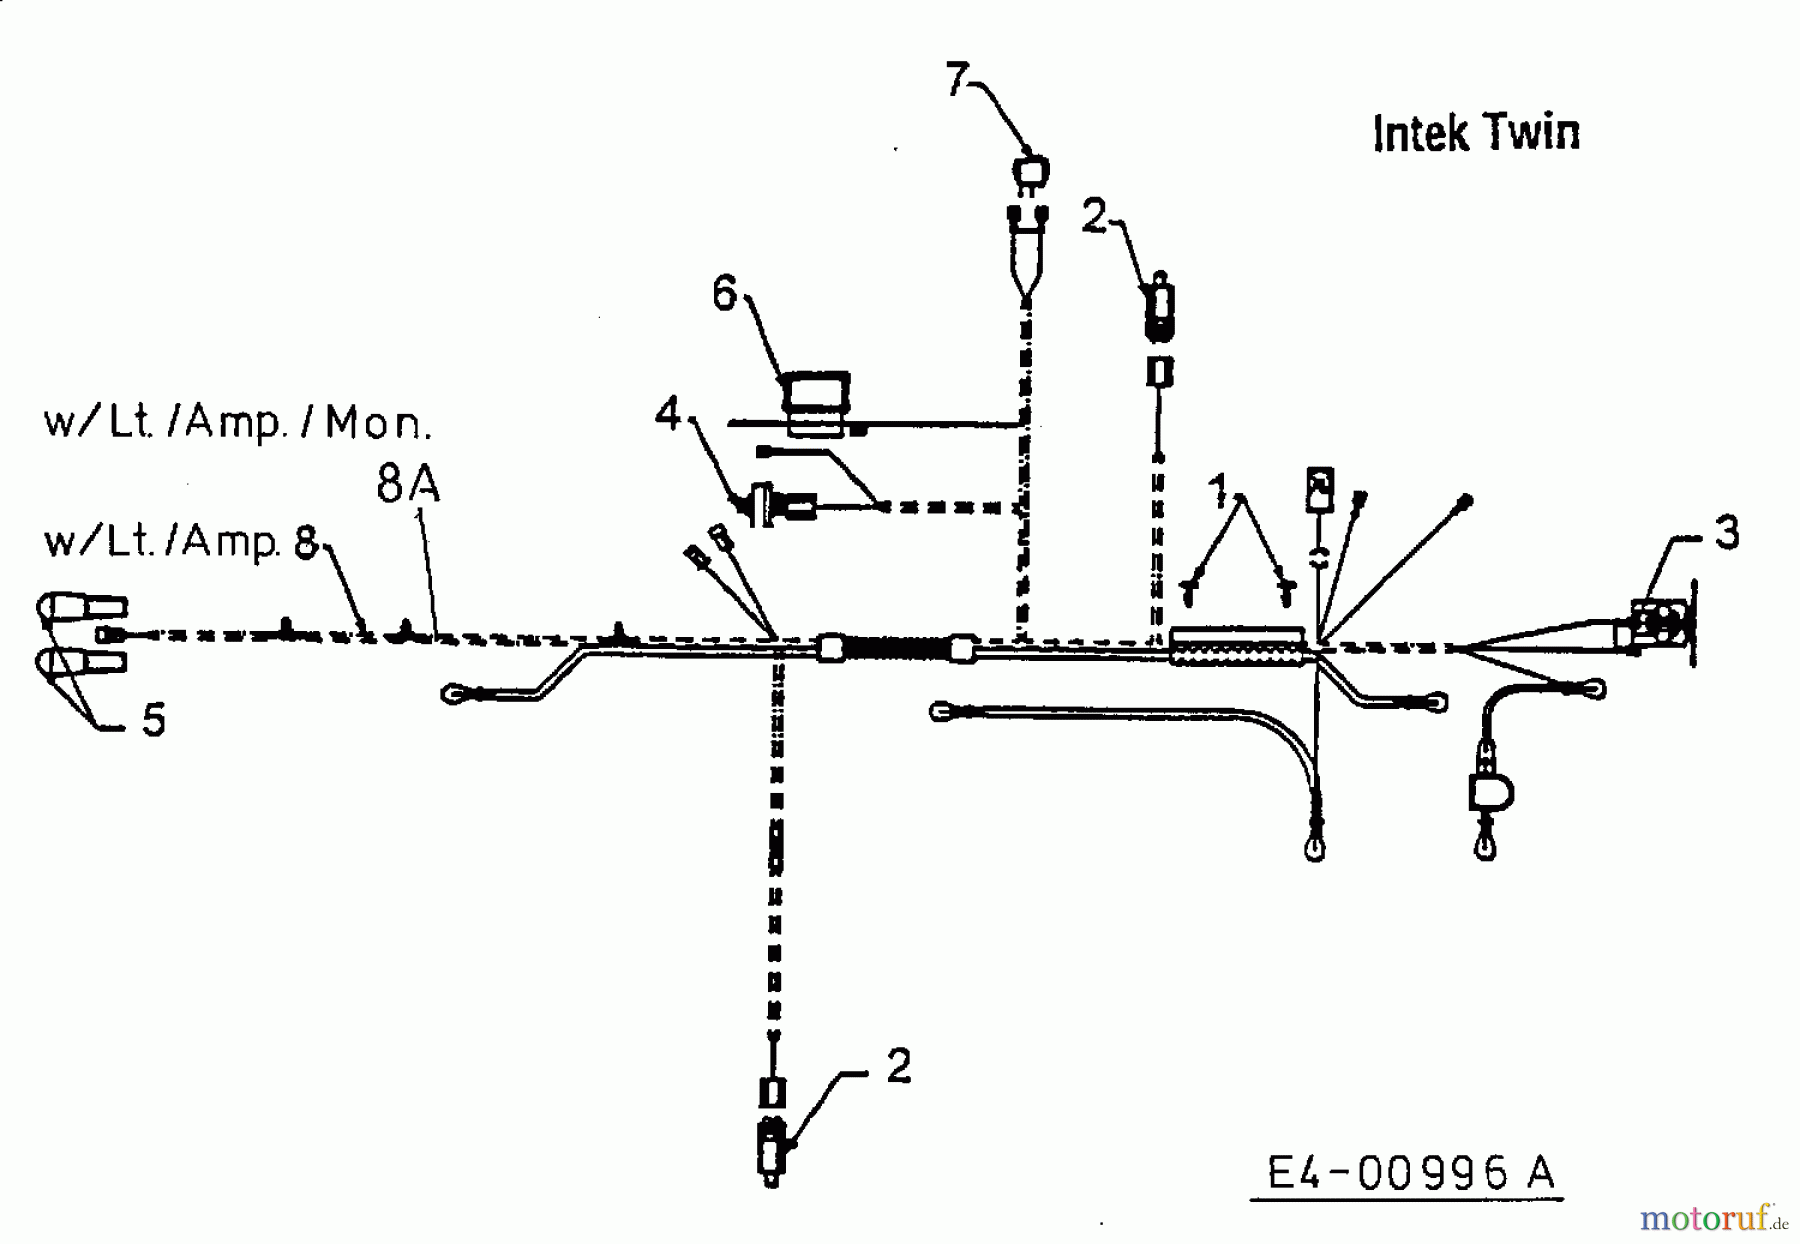  MTD Rasentraktoren H/165 13AO698G678  (1999) Schaltplan Intek Twin